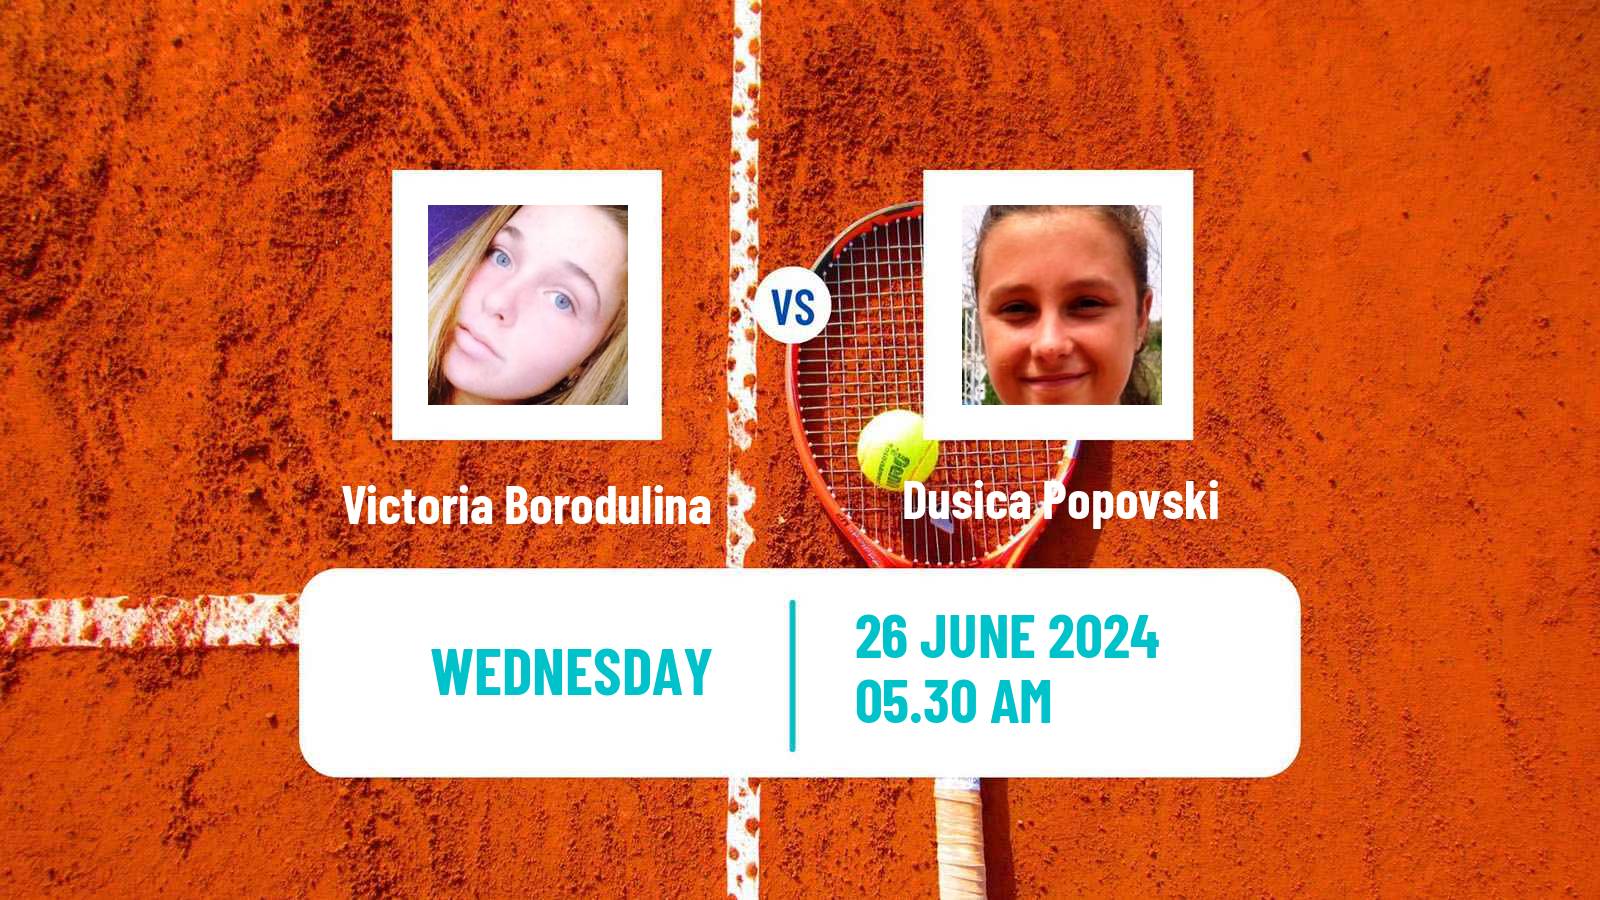 Tennis ITF W15 Kursumlijska Banja 12 Women Victoria Borodulina - Dusica Popovski